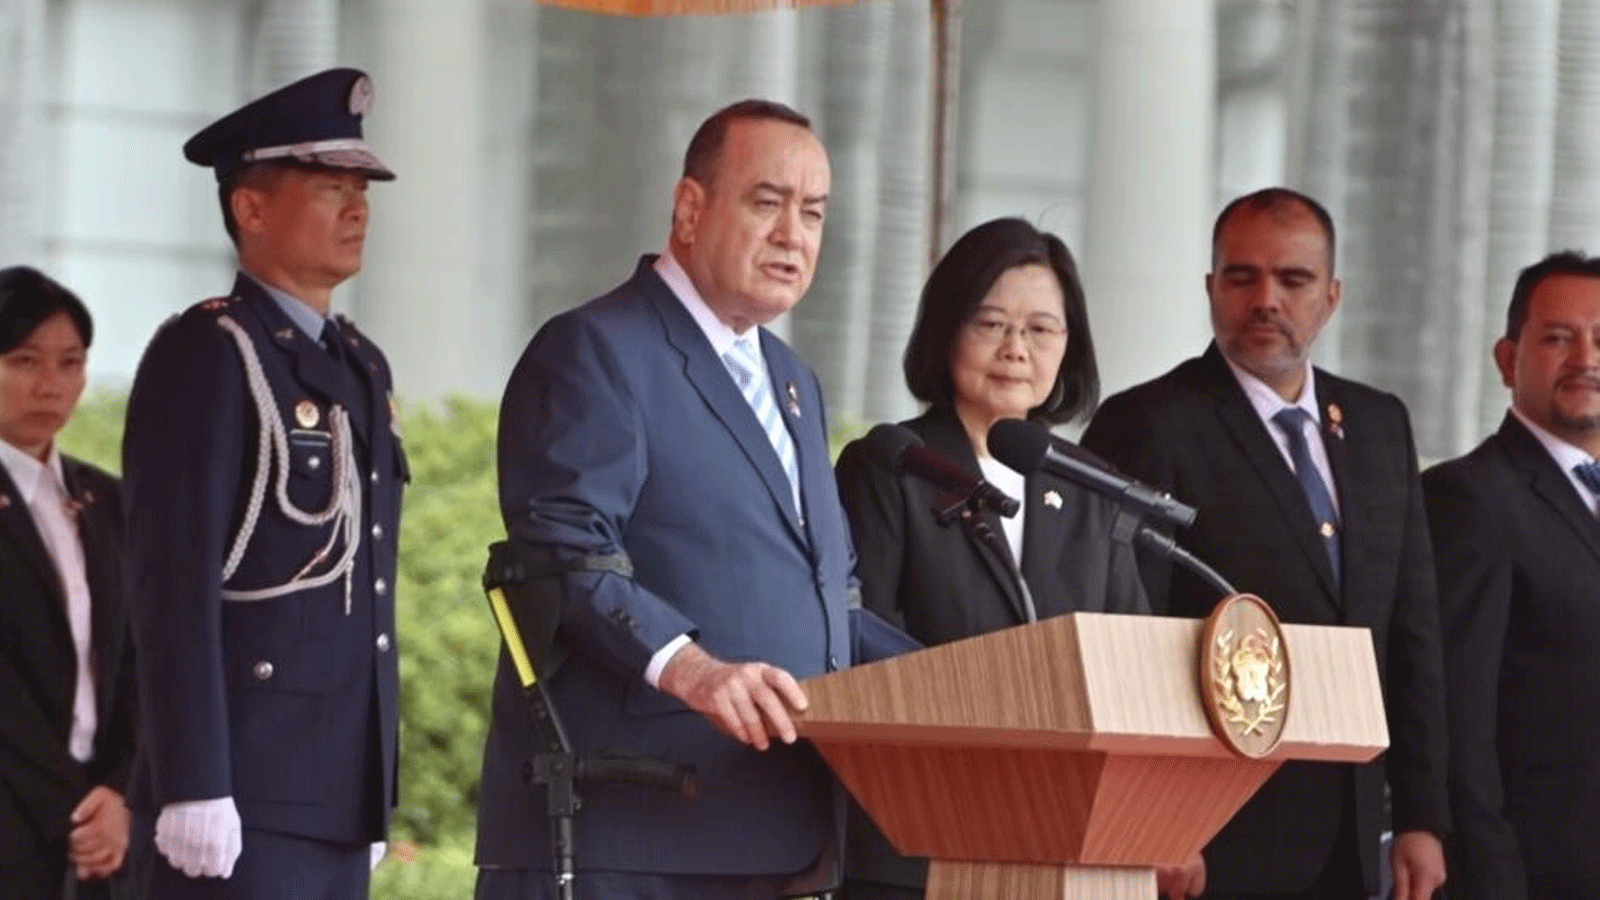 رئيس غواتيمالا أليخاندرو جياماتي يتحدث بجوار الرئيسة التايوانية تساي إنغ وين خلال حفل استقبال عسكري في تايبيه